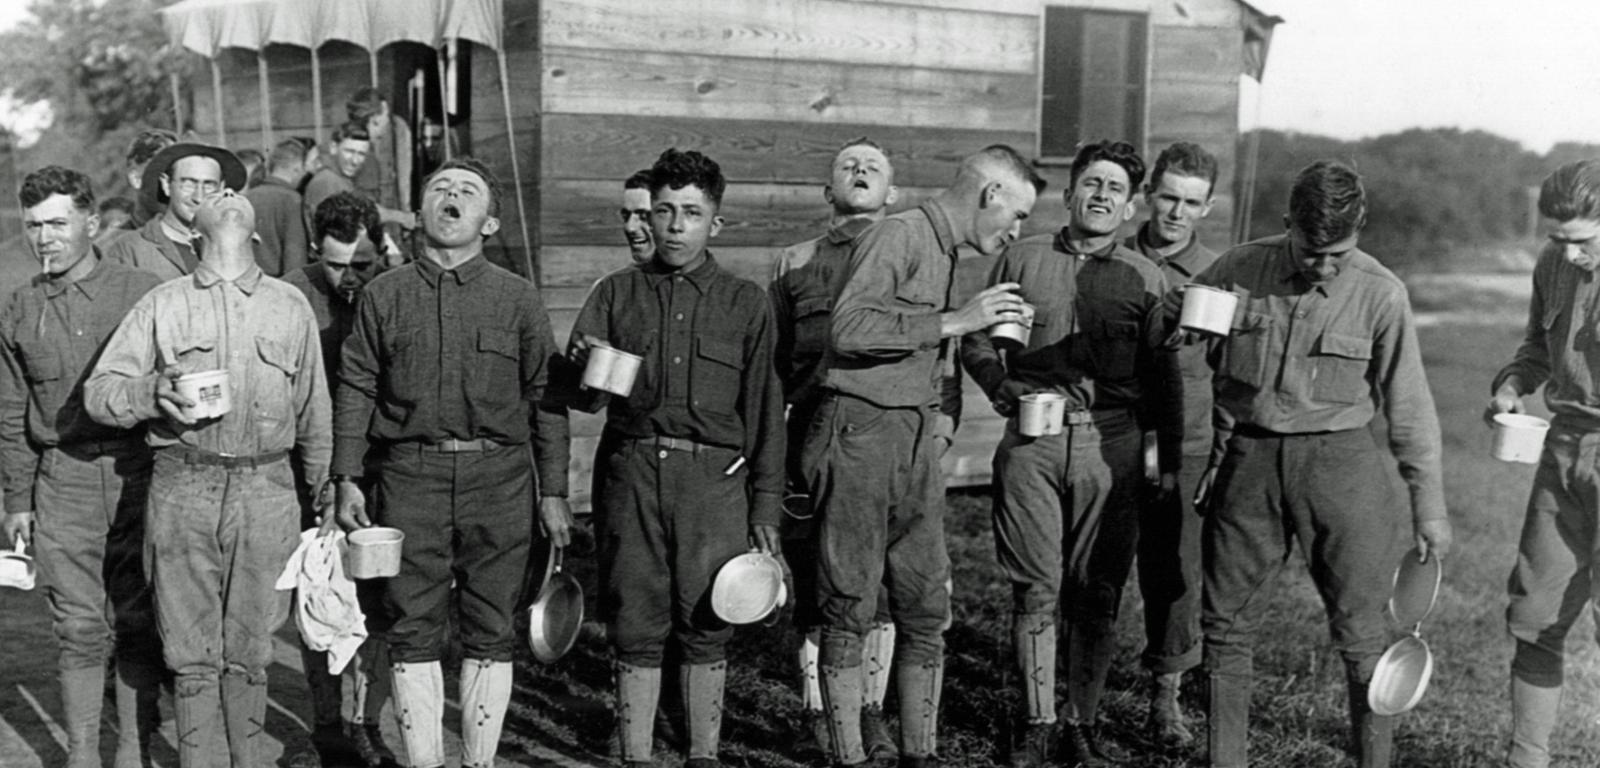 Żołnierze płuczący gardła wodą z solą, co miało ich ustrzec przed zarażeniem się grypą. Camp Dix, New Jersey, 1918 lub 1919 r.